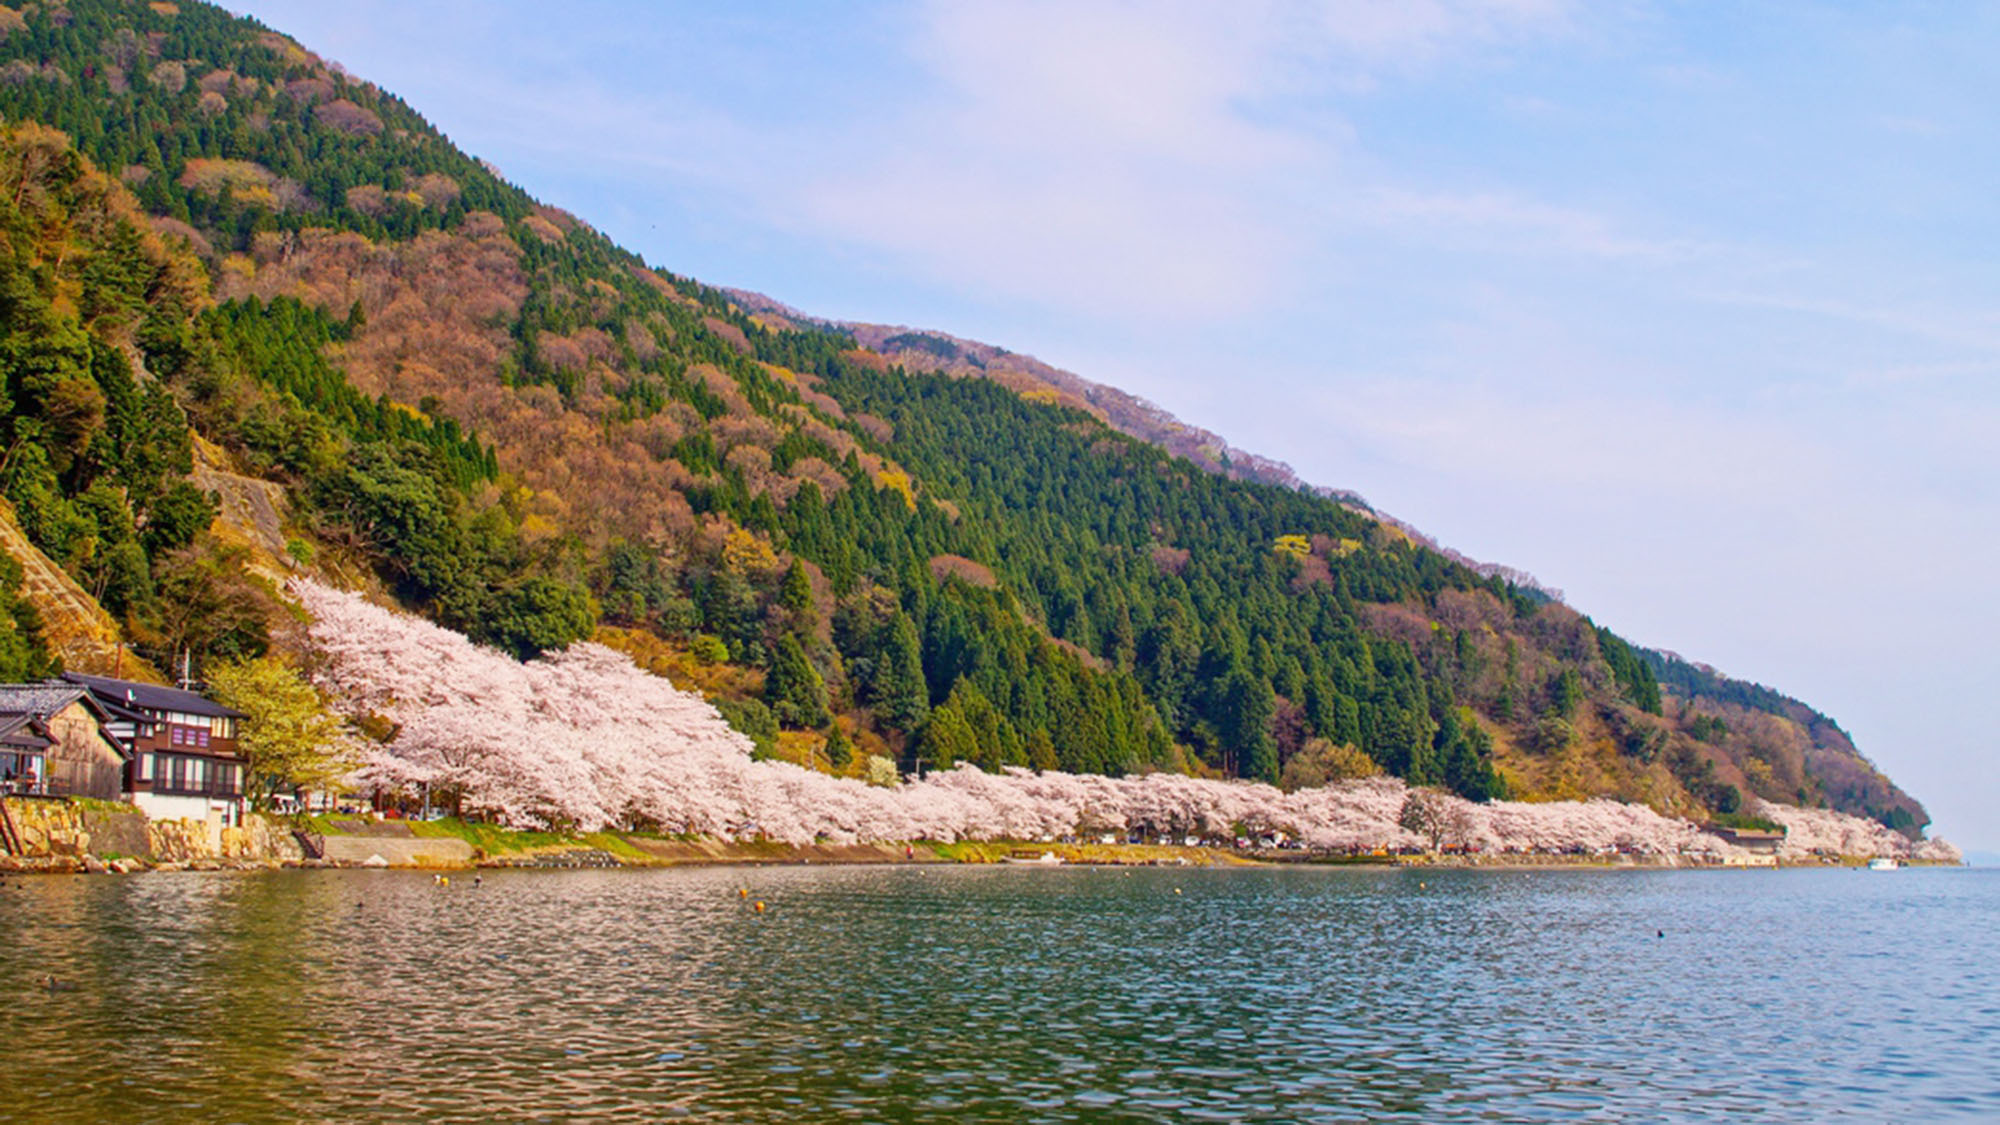 ・春には琵琶湖沿いに桜が咲き誇ります